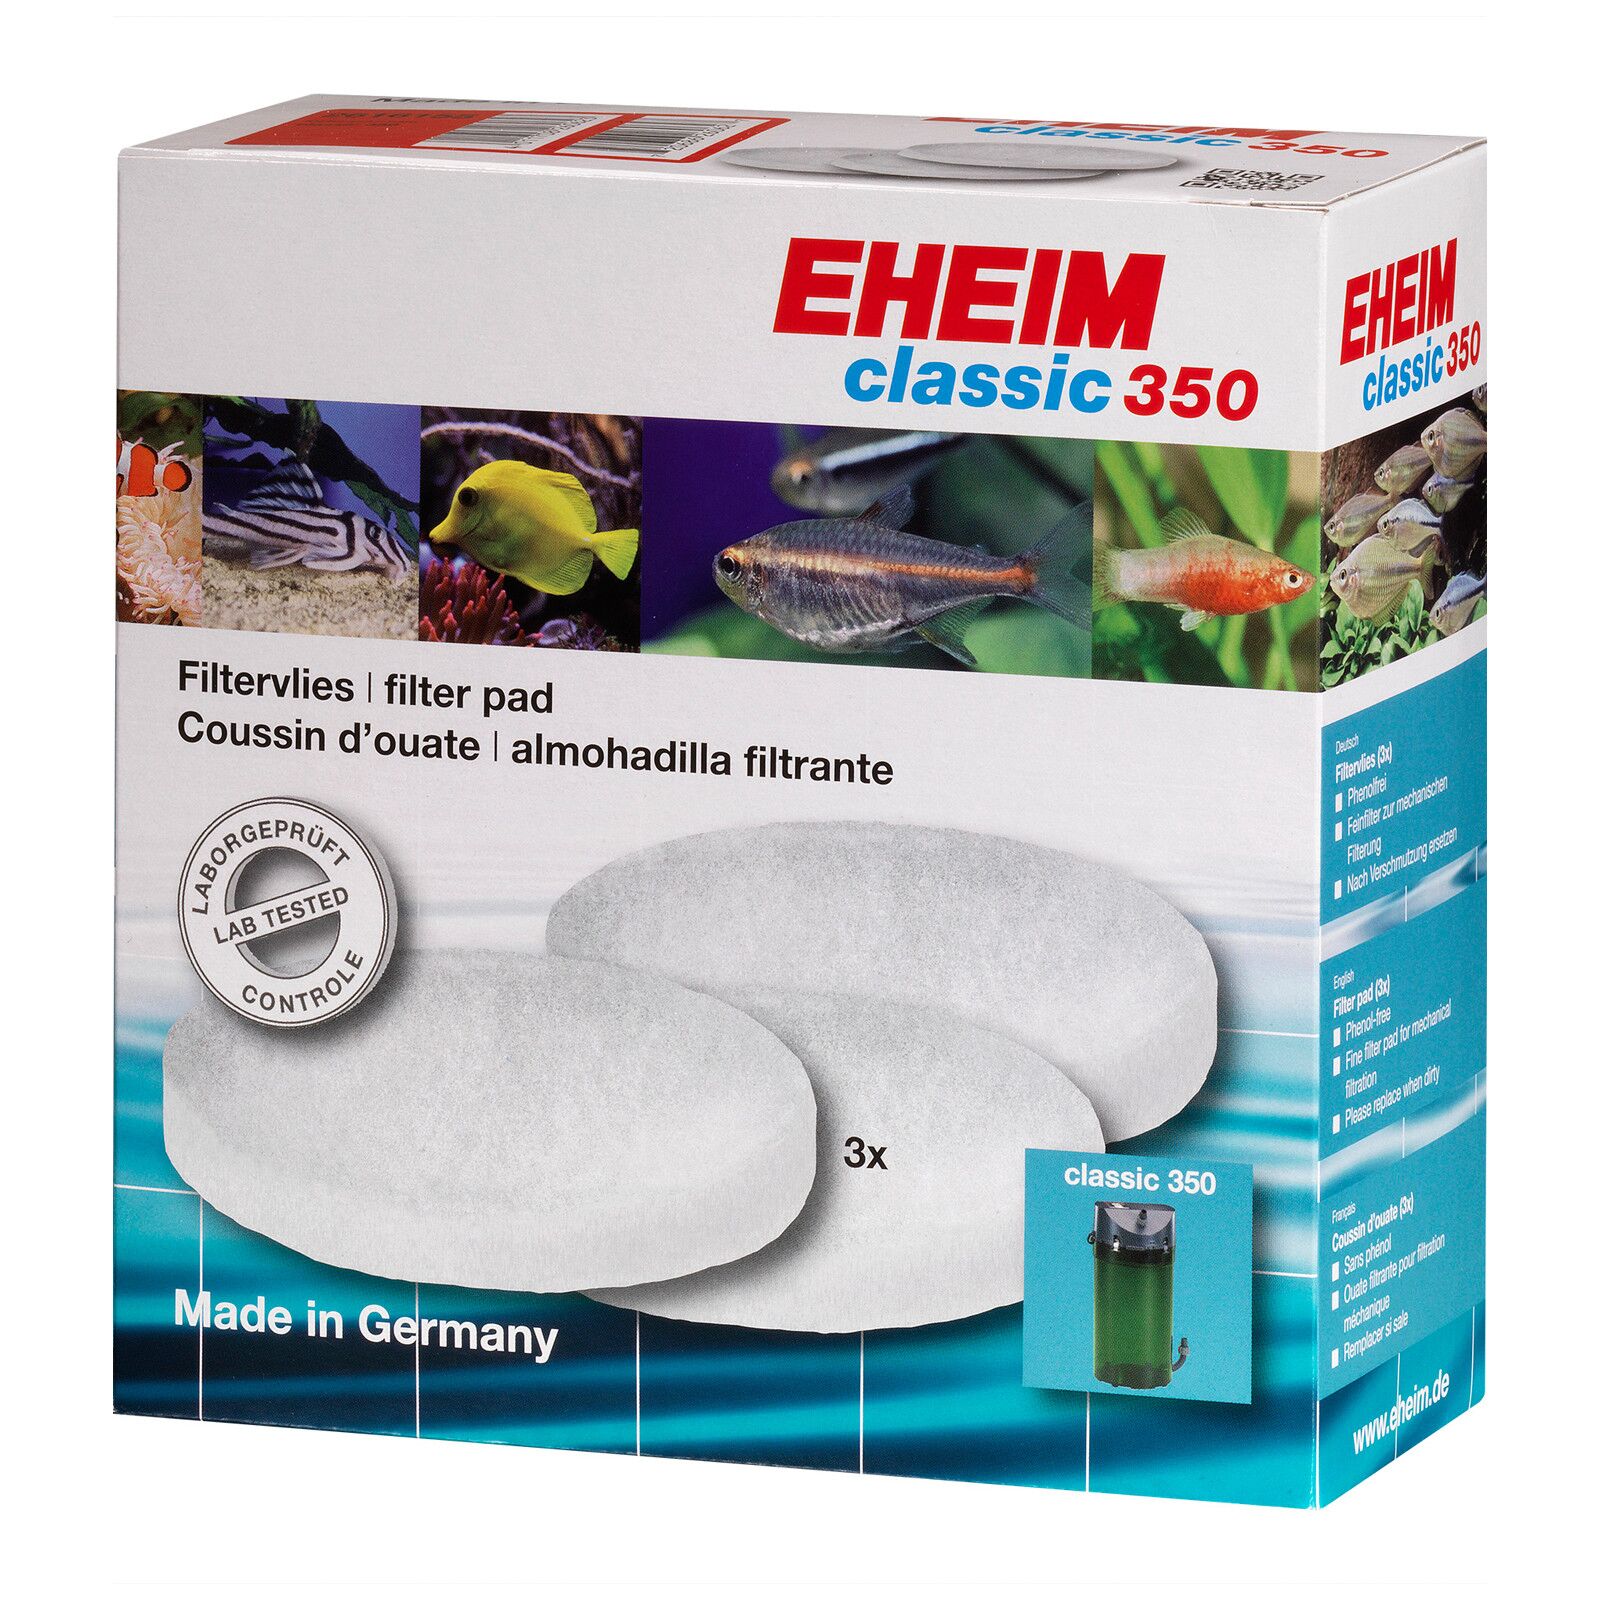 EHEIM - Filtervlies